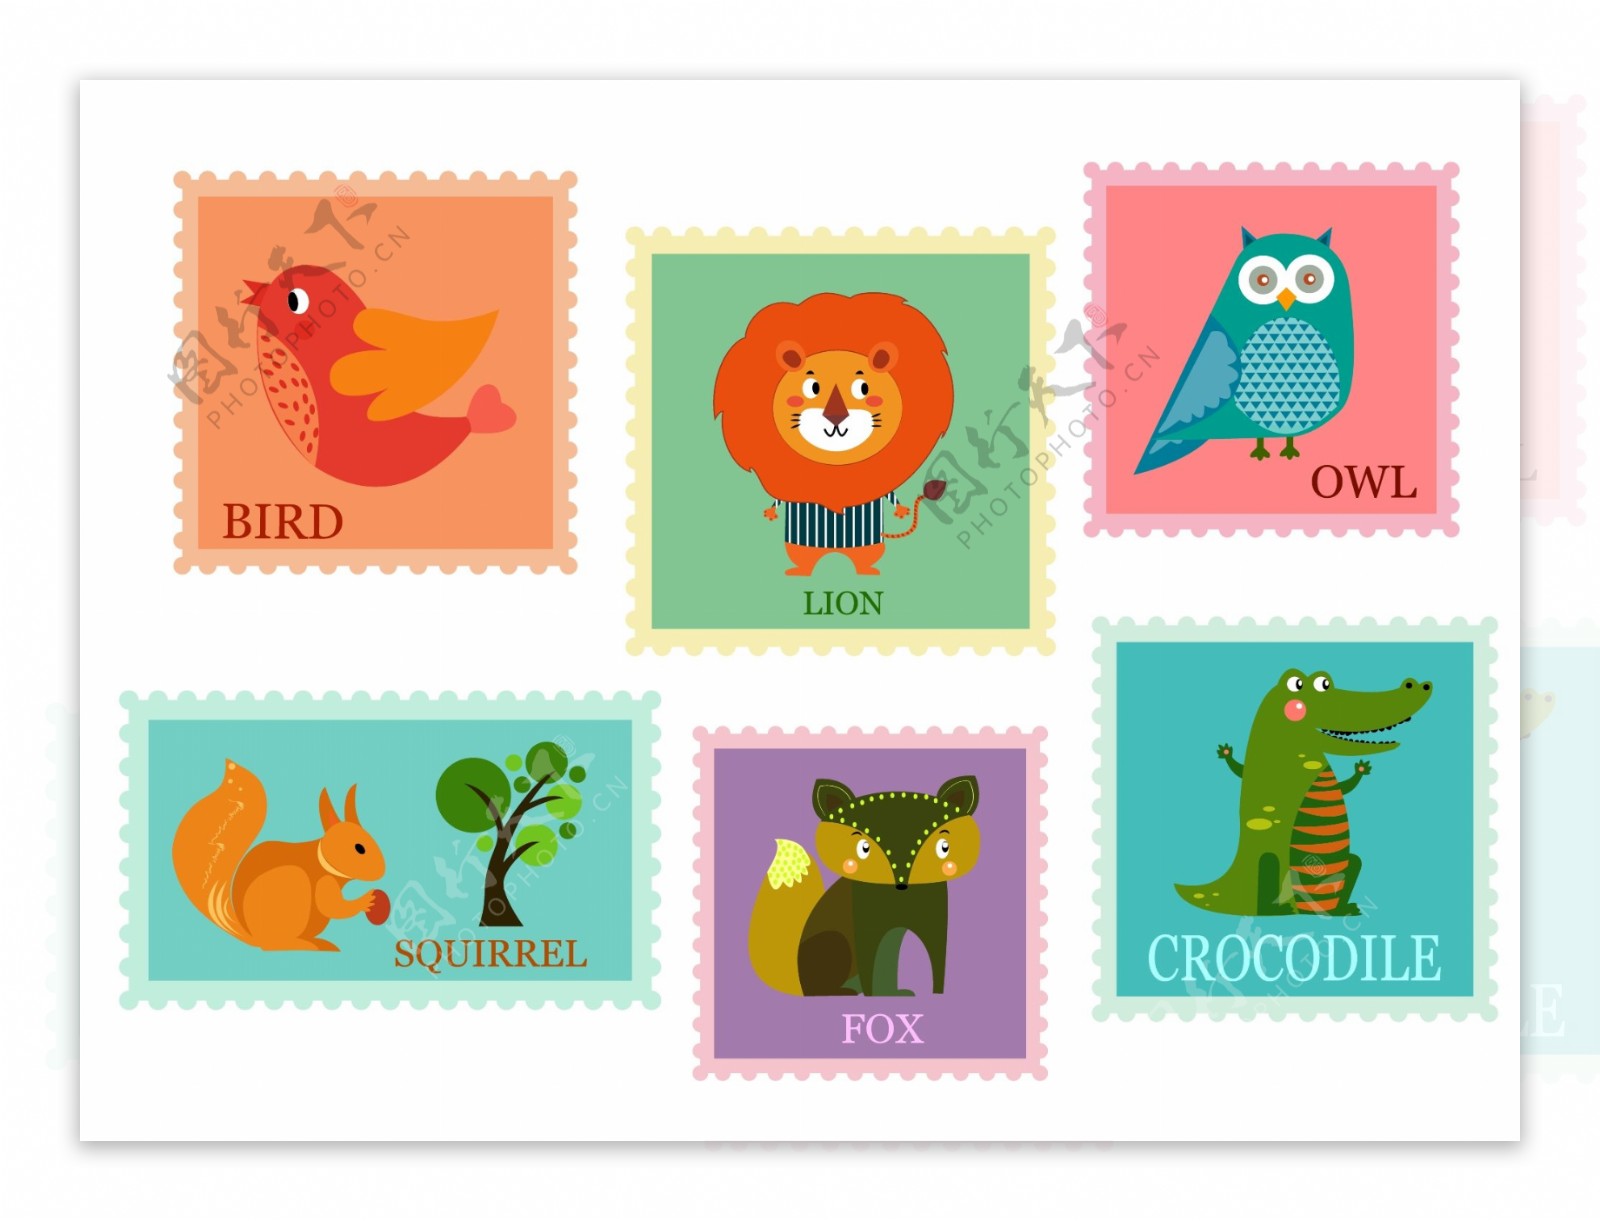 可爱的动物邮票